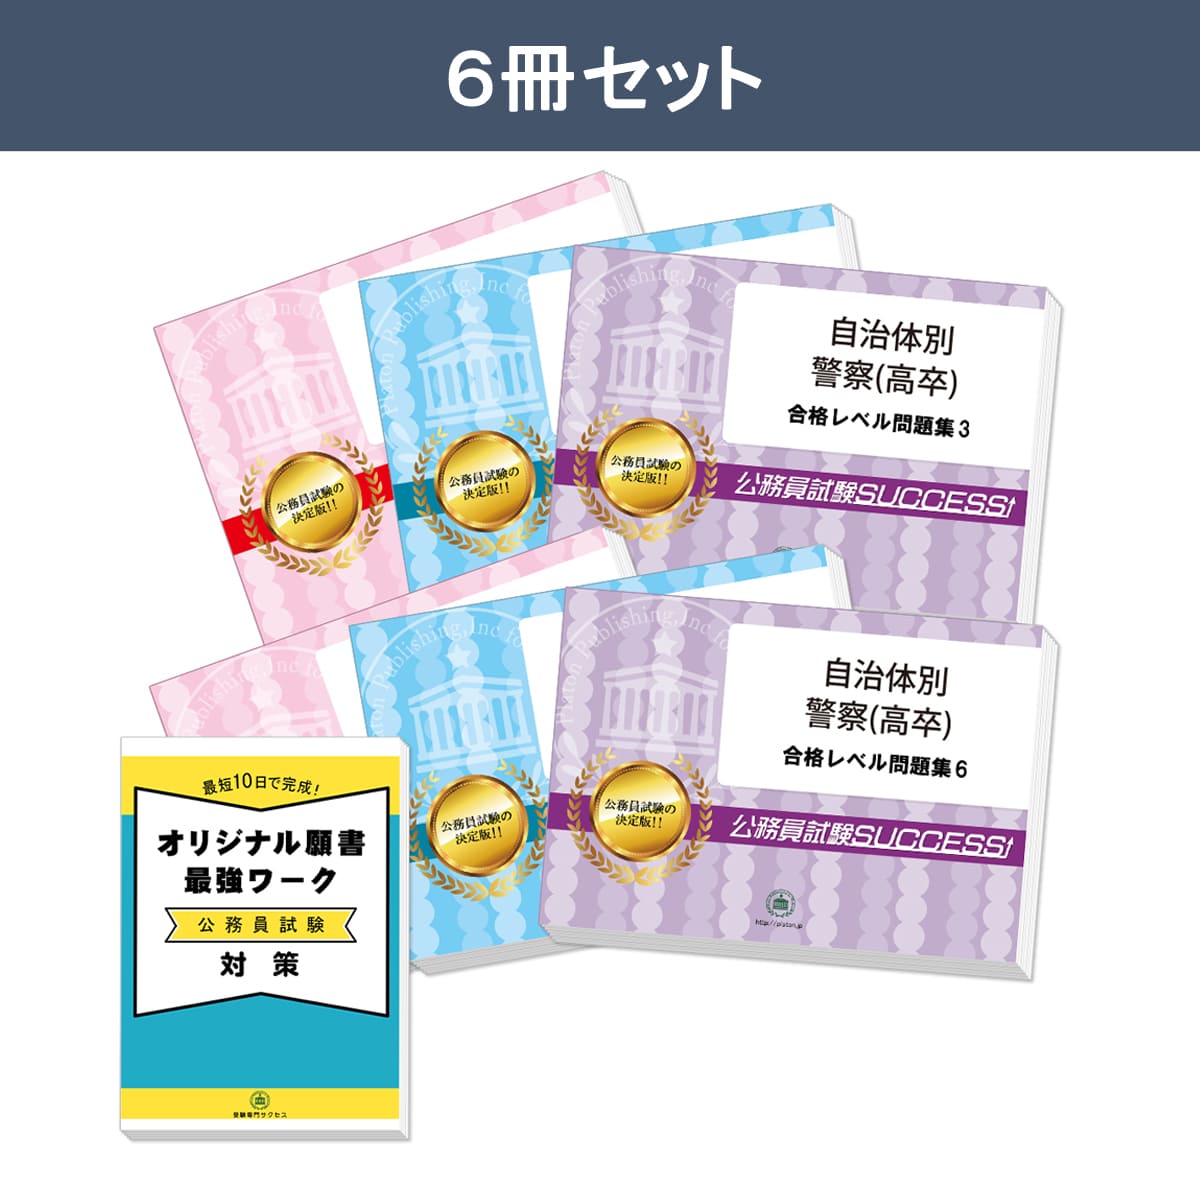 静岡県警察官B採用教養試験合格セット問題集(6冊)＋願書ワークセット 